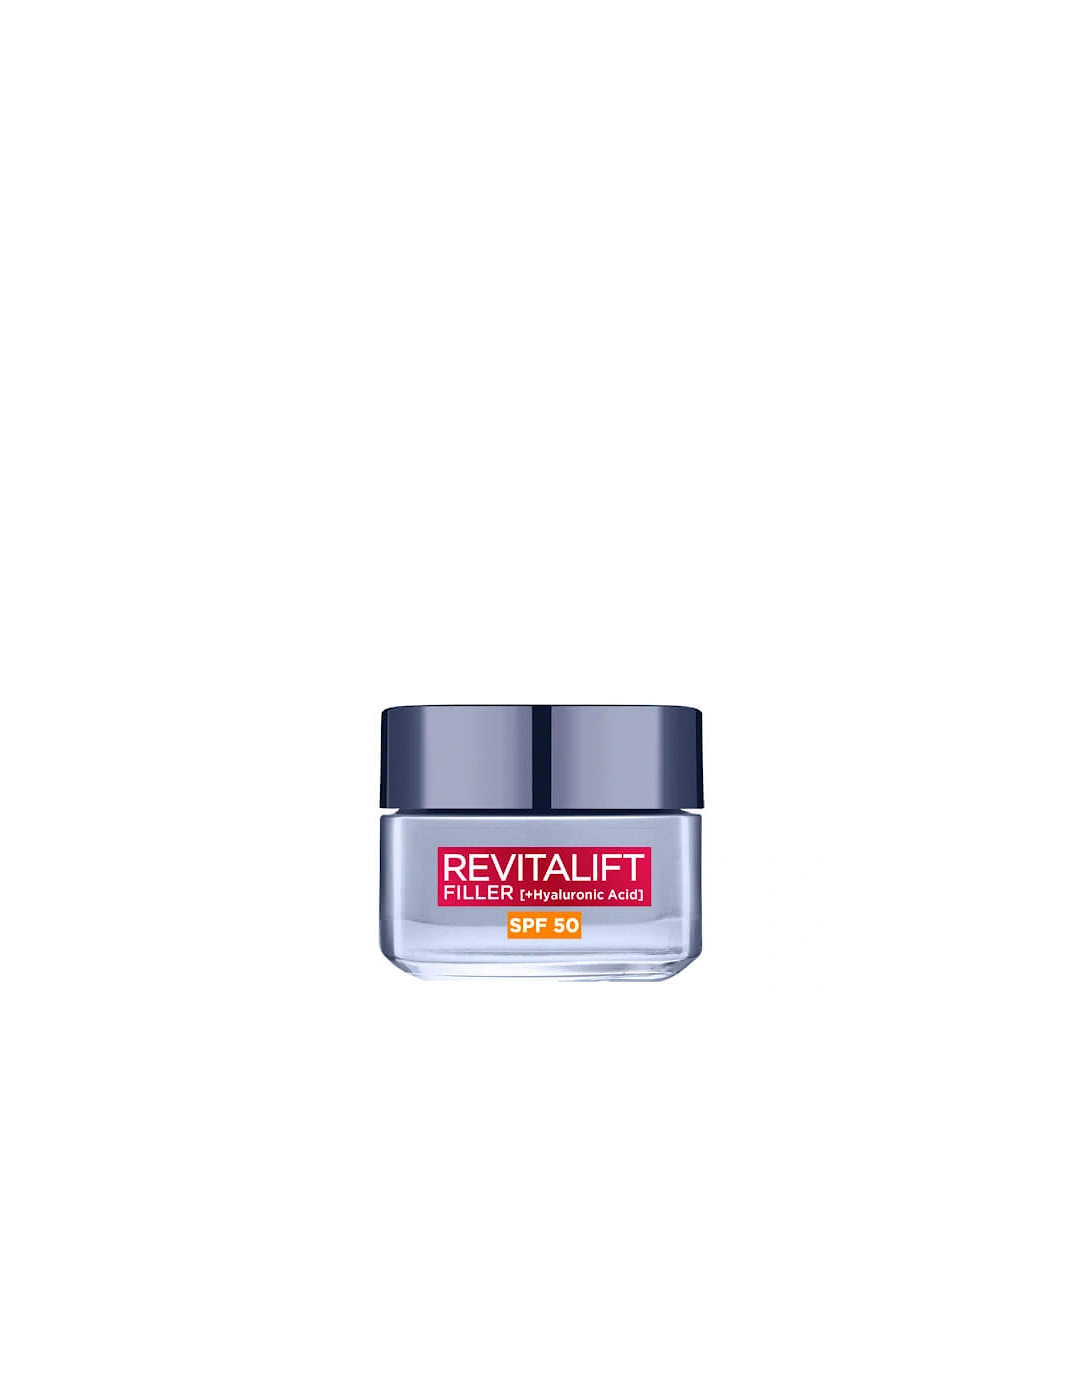 Paris Revitalift Filler Hyaluronic Acid Anti-Ageing SPF50 Day Cream 50ml, 2 of 1